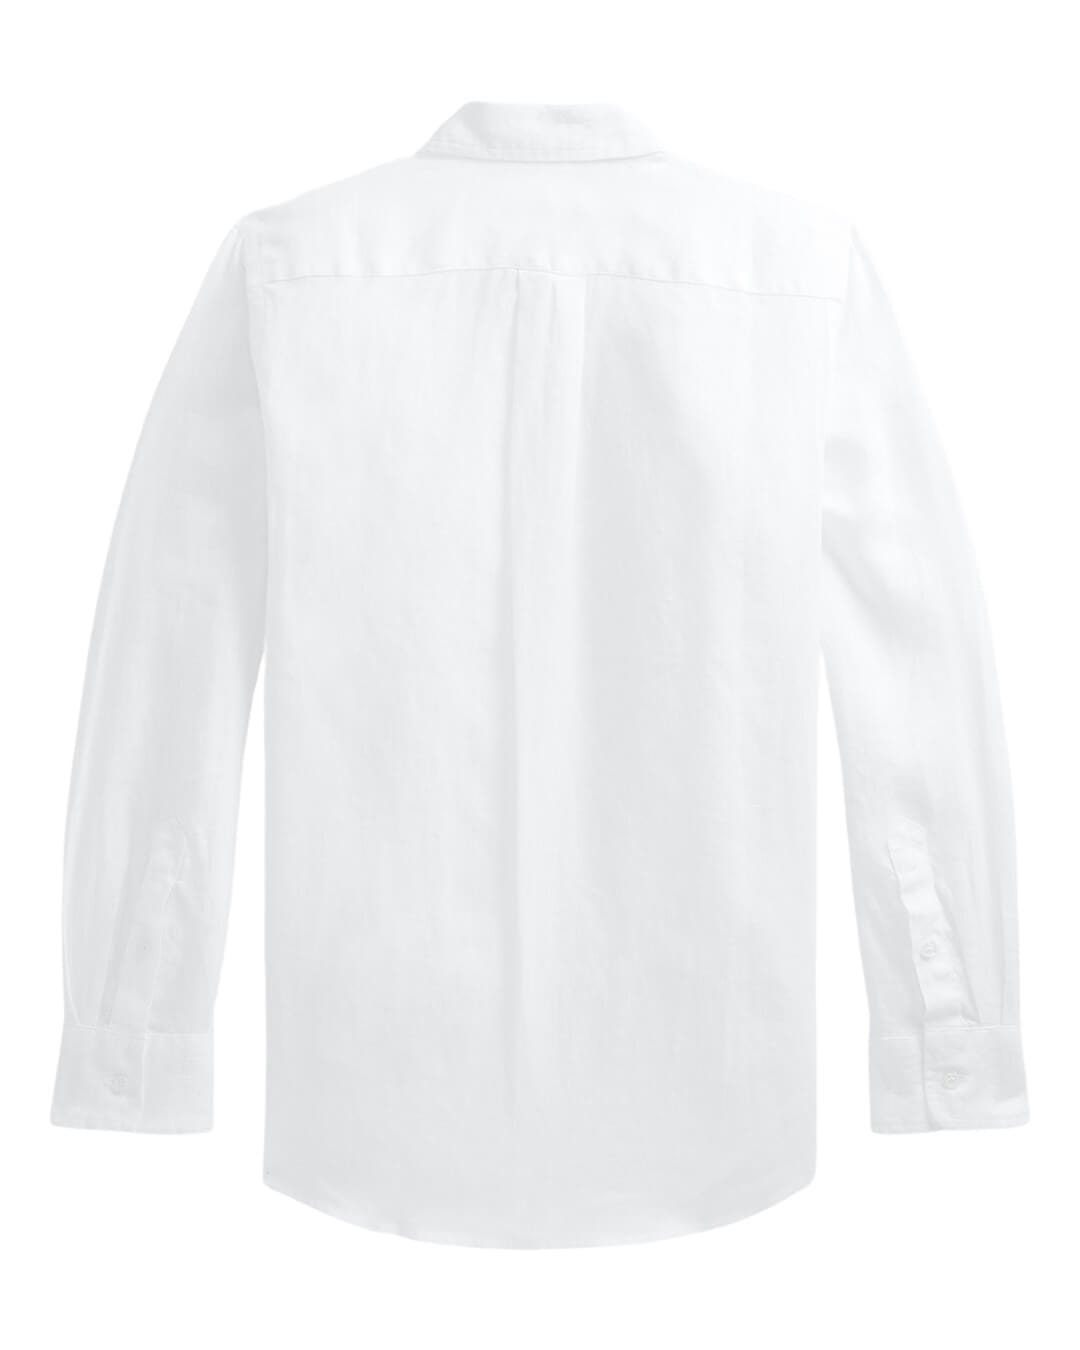 Polo Ralph Lauren Shirts Boys Polo Ralph Lauren Long Sleeved White Linen Shirt